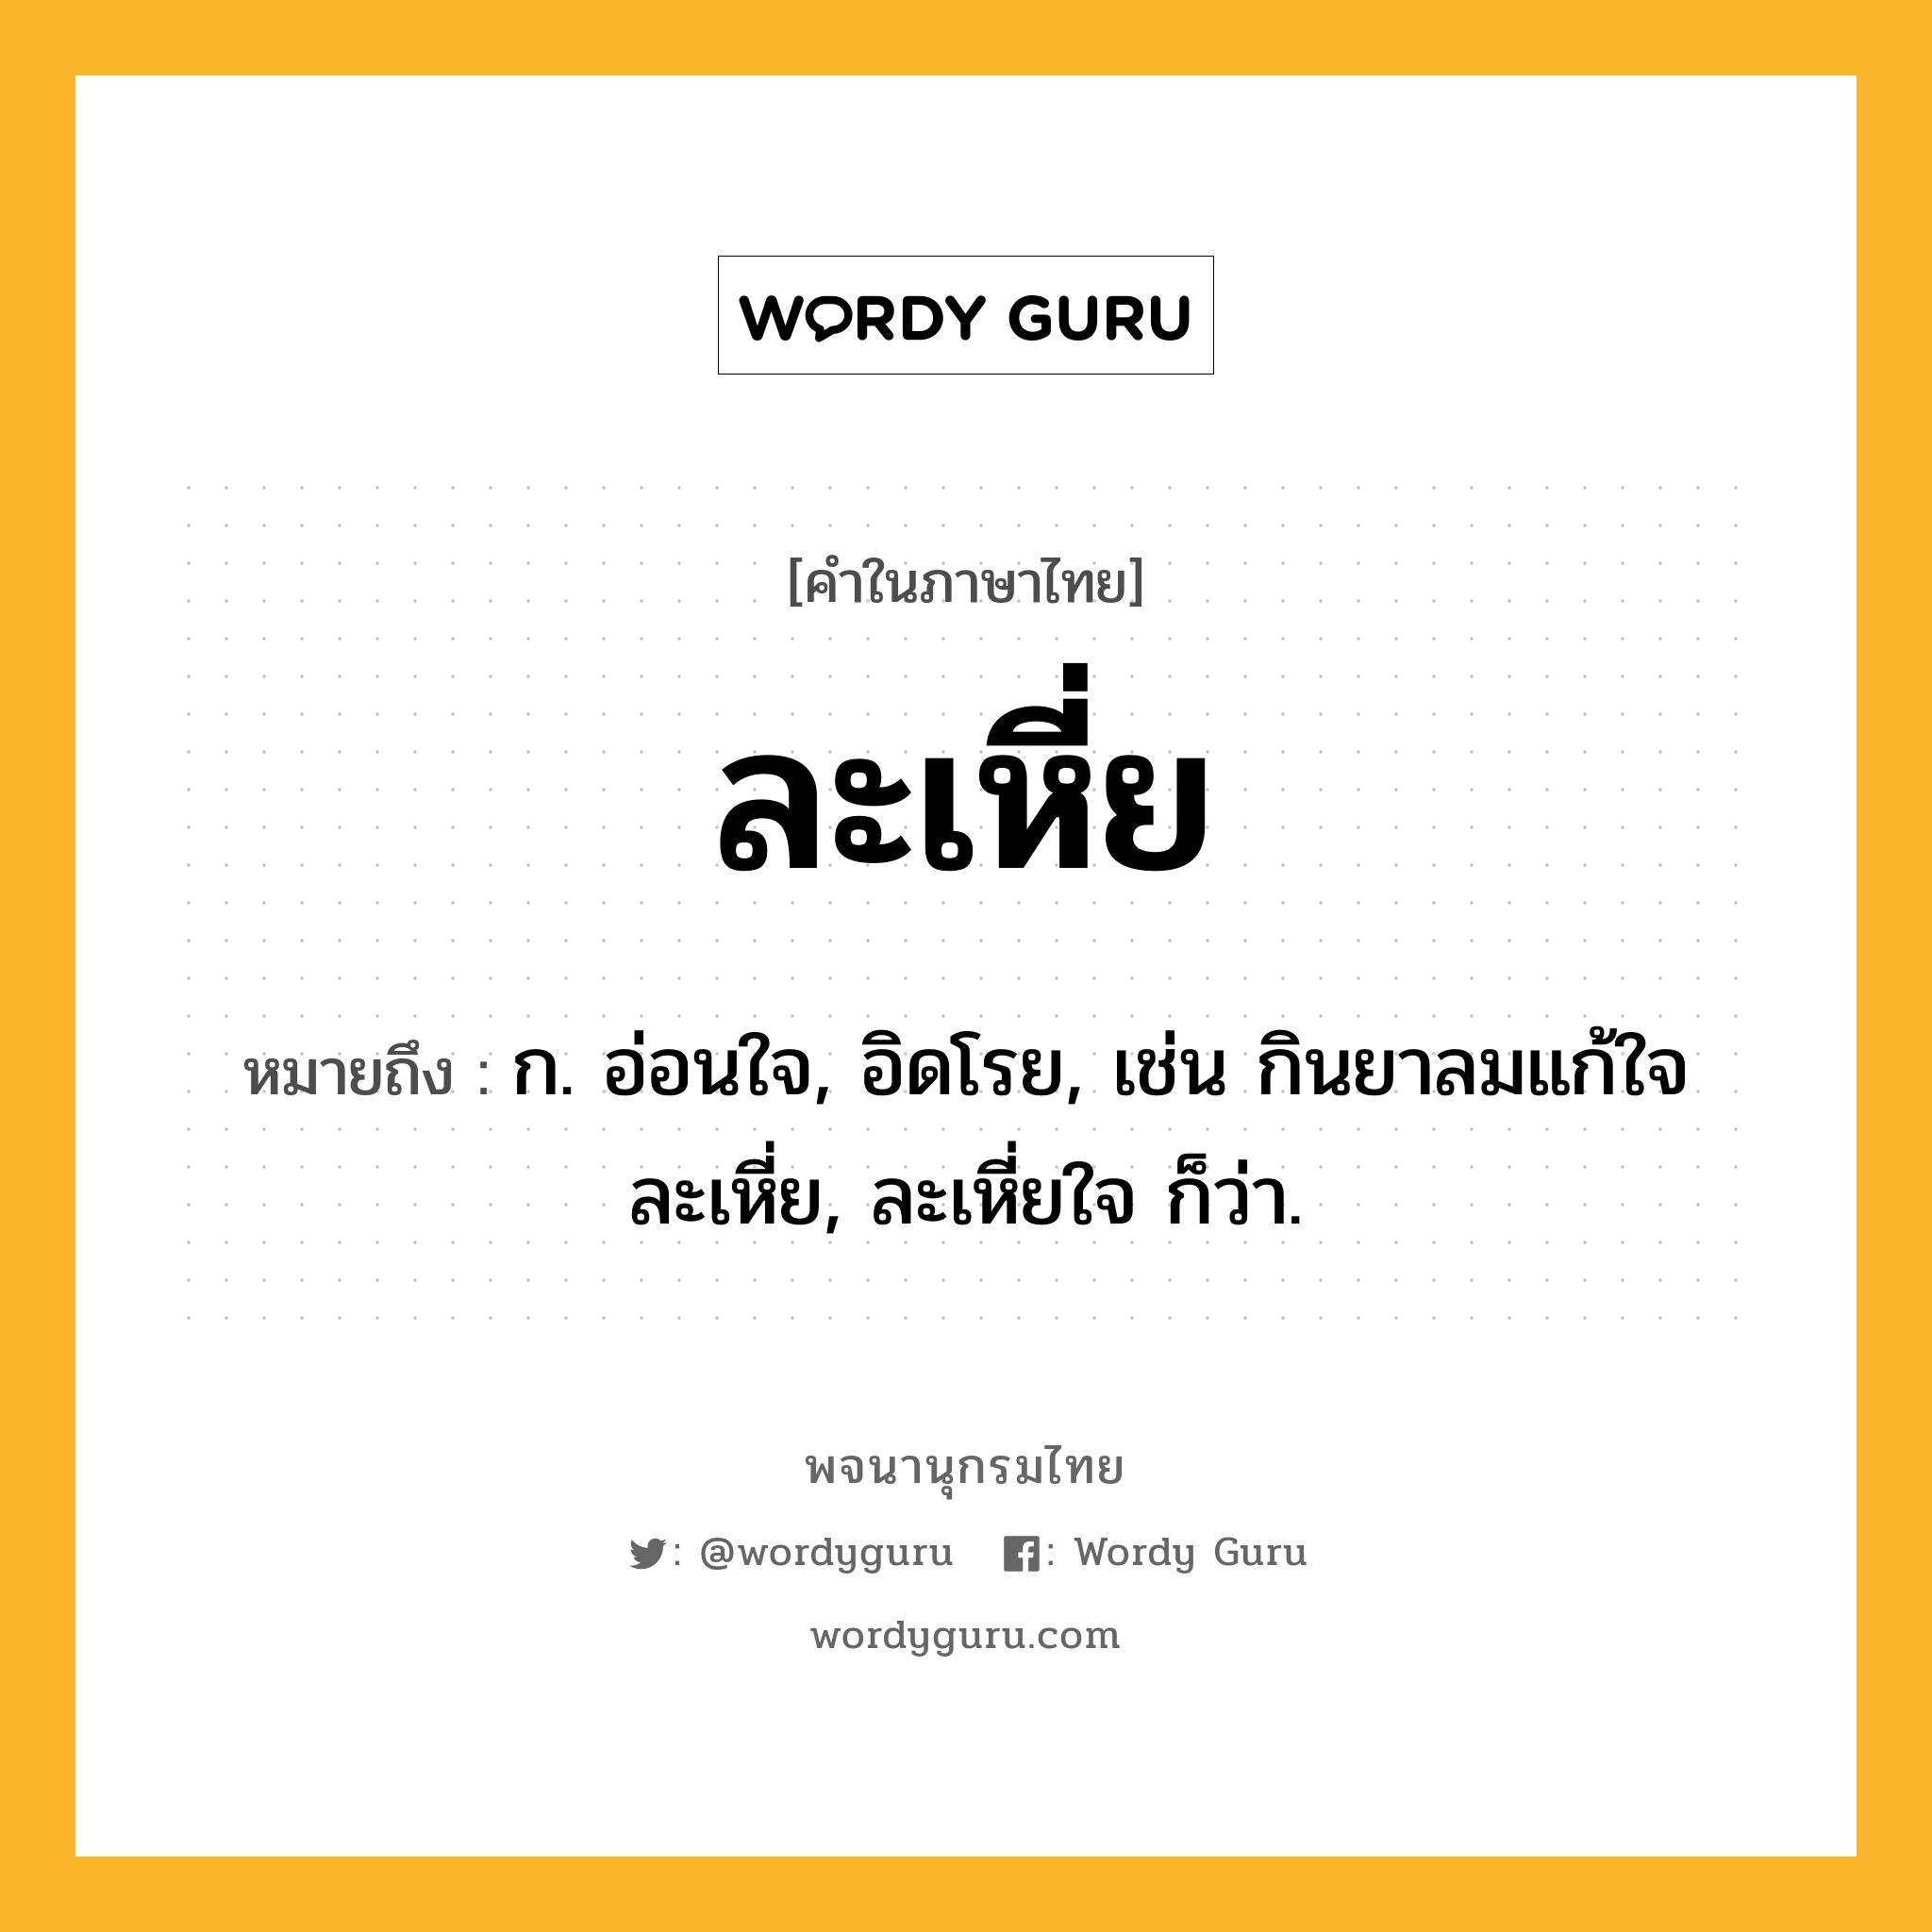 ละเหี่ย หมายถึงอะไร?, คำในภาษาไทย ละเหี่ย หมายถึง ก. อ่อนใจ, อิดโรย, เช่น กินยาลมแก้ใจละเหี่ย, ละเหี่ยใจ ก็ว่า.